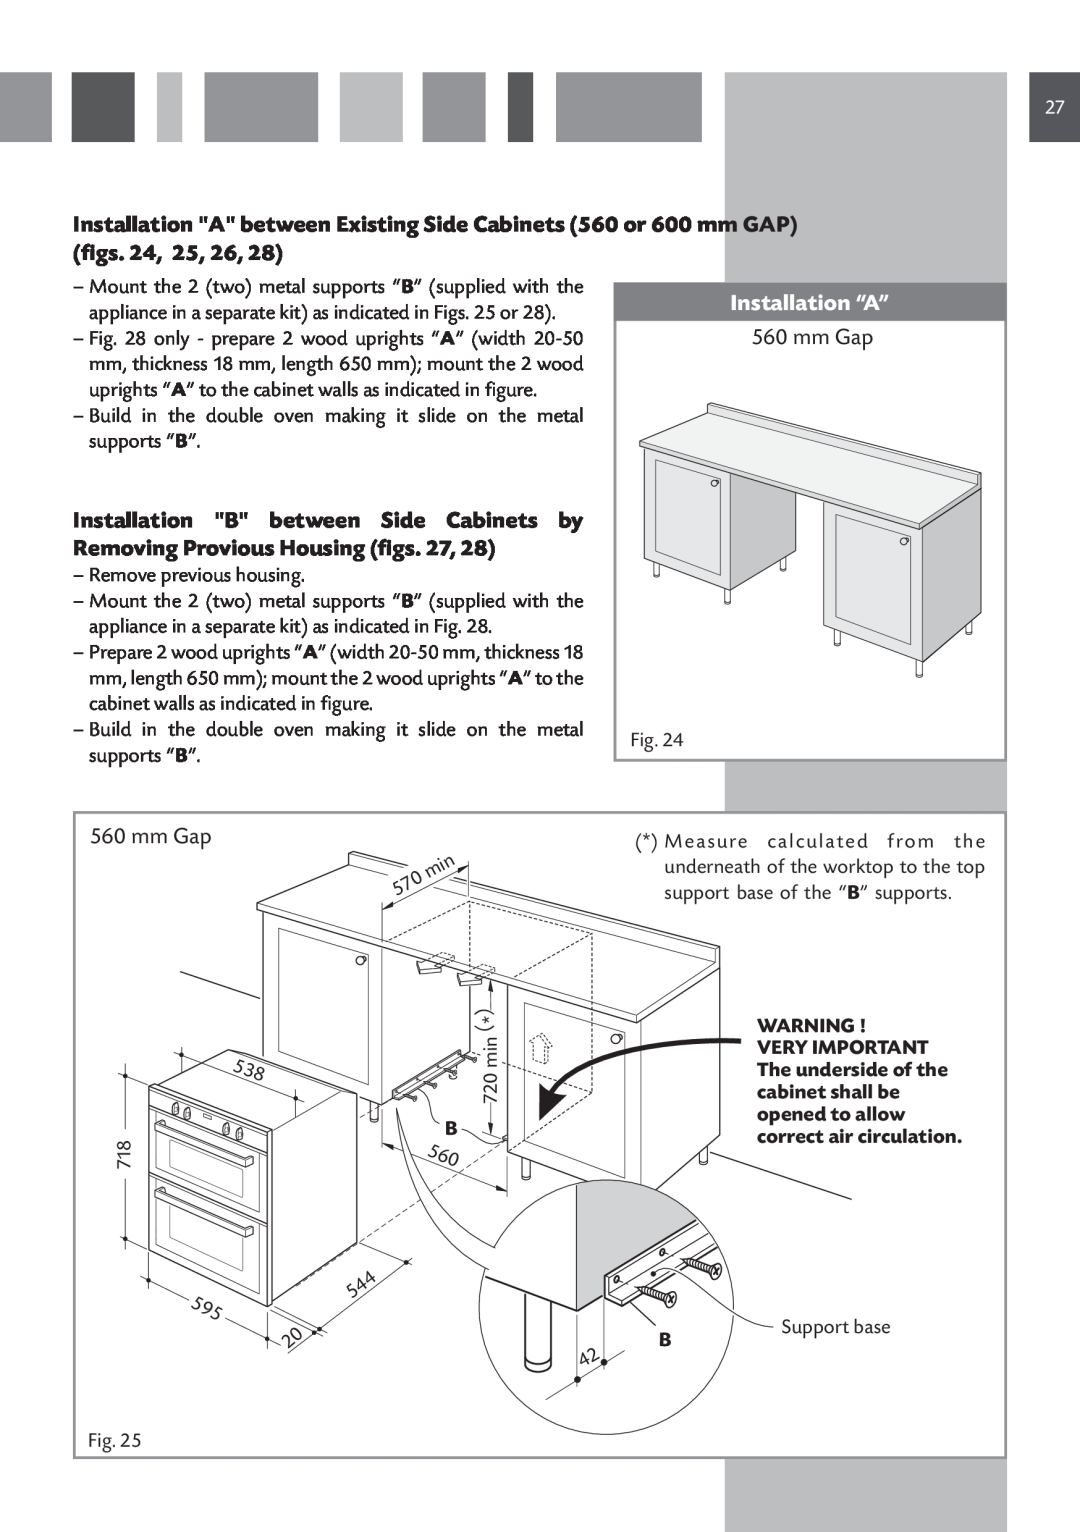 CDA DV 710 manual Installation “A”, mm Gap 